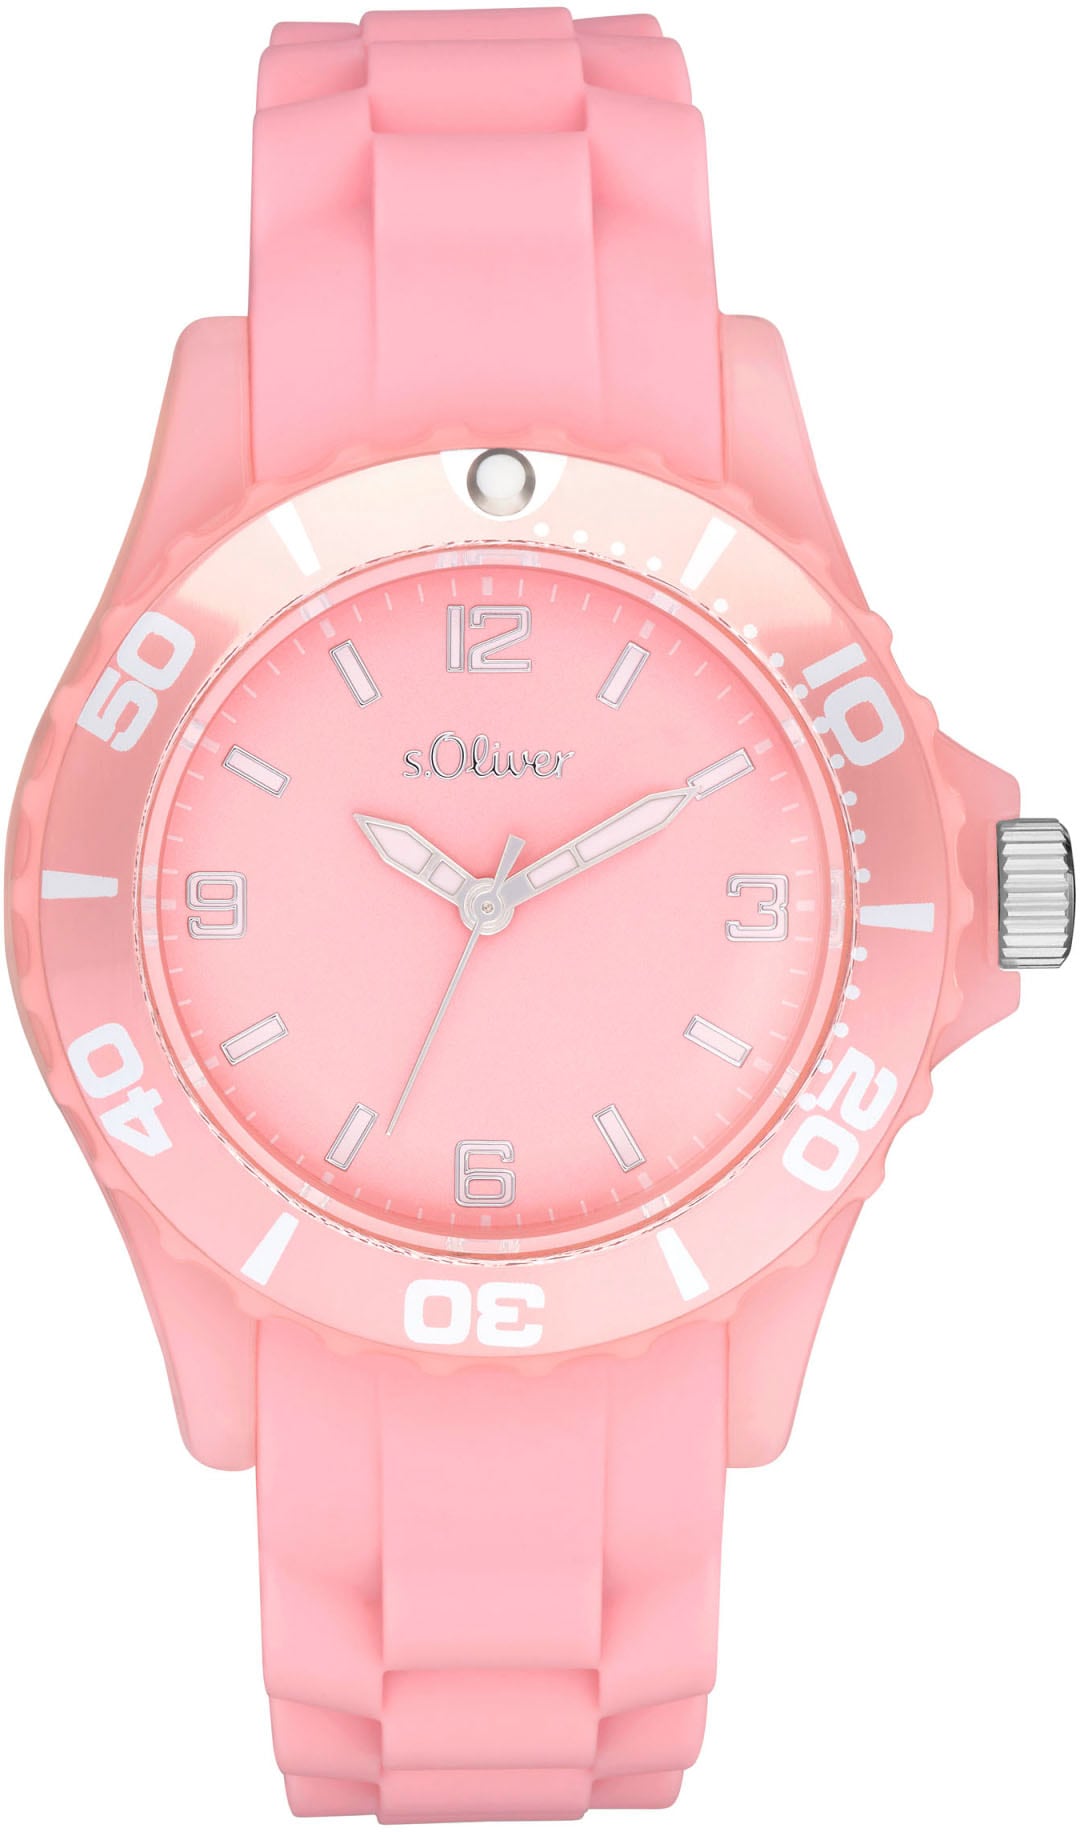 s.Oliver Quarzuhr »2036502«, Armbanduhr, Kinderuhr, ideal auch als Geschenk